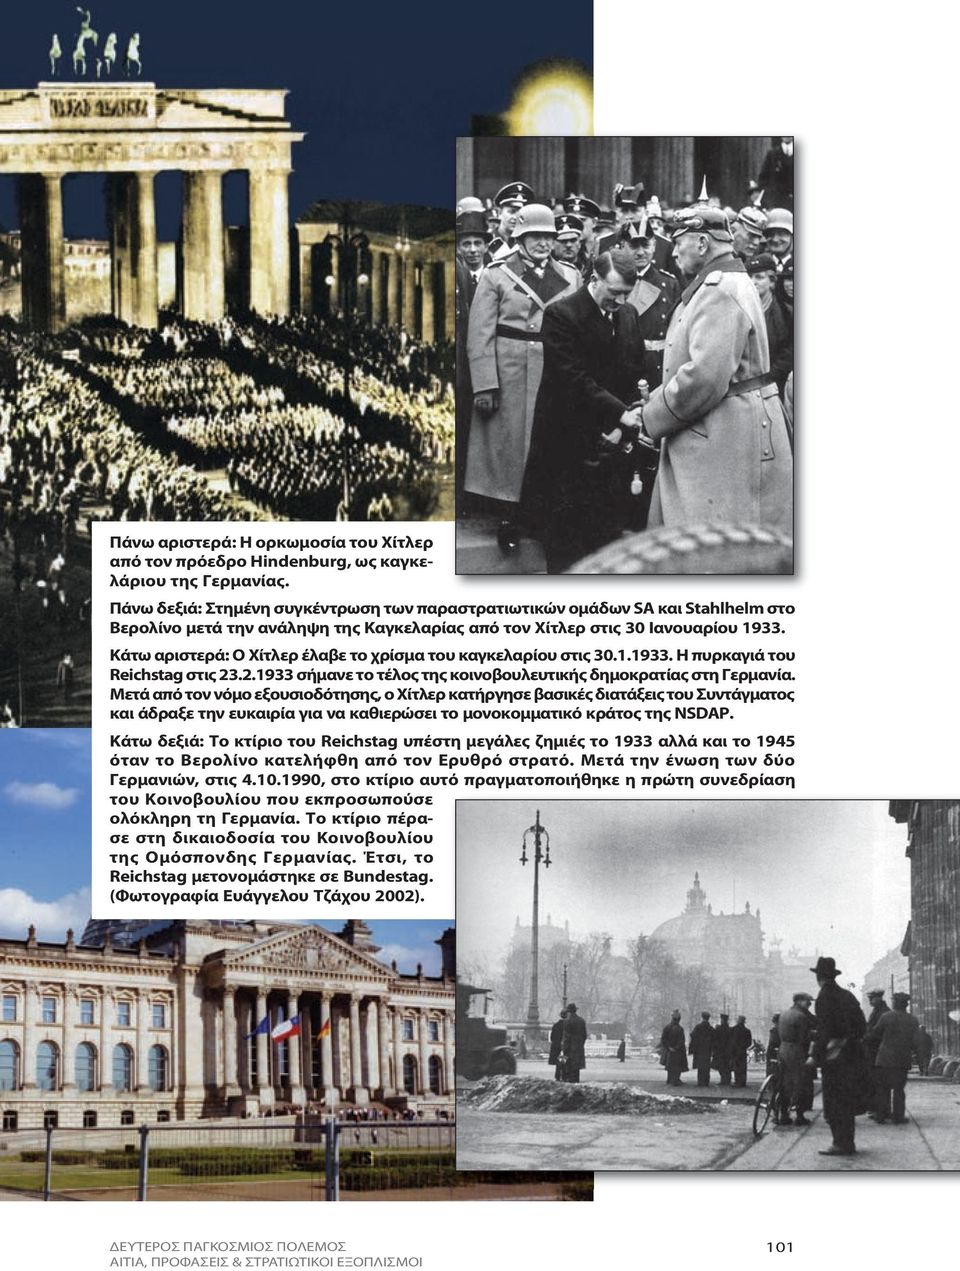 Κάτω αριστερά: Ο Χίτλερ έλαβε το χρίσμα του καγκελαρίου στις 30.1.1933. Η πυρκαγιά του Reichstag στις 23.2.1933 σήμανε το τέλος της κοινοβουλευτικής δημοκρατίας στη Γερμανία.